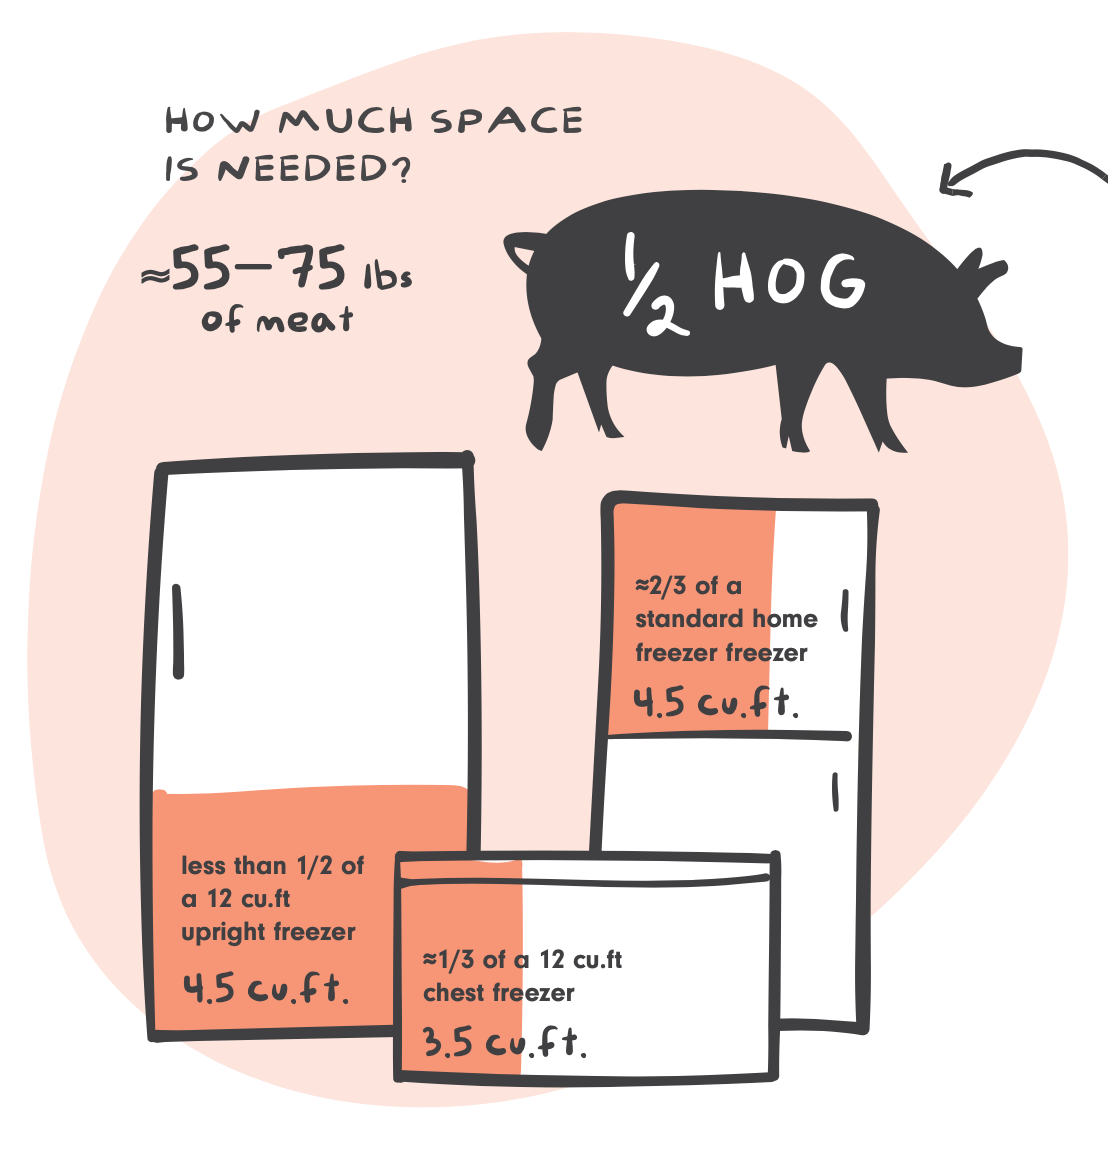 WHOLE Hog Share